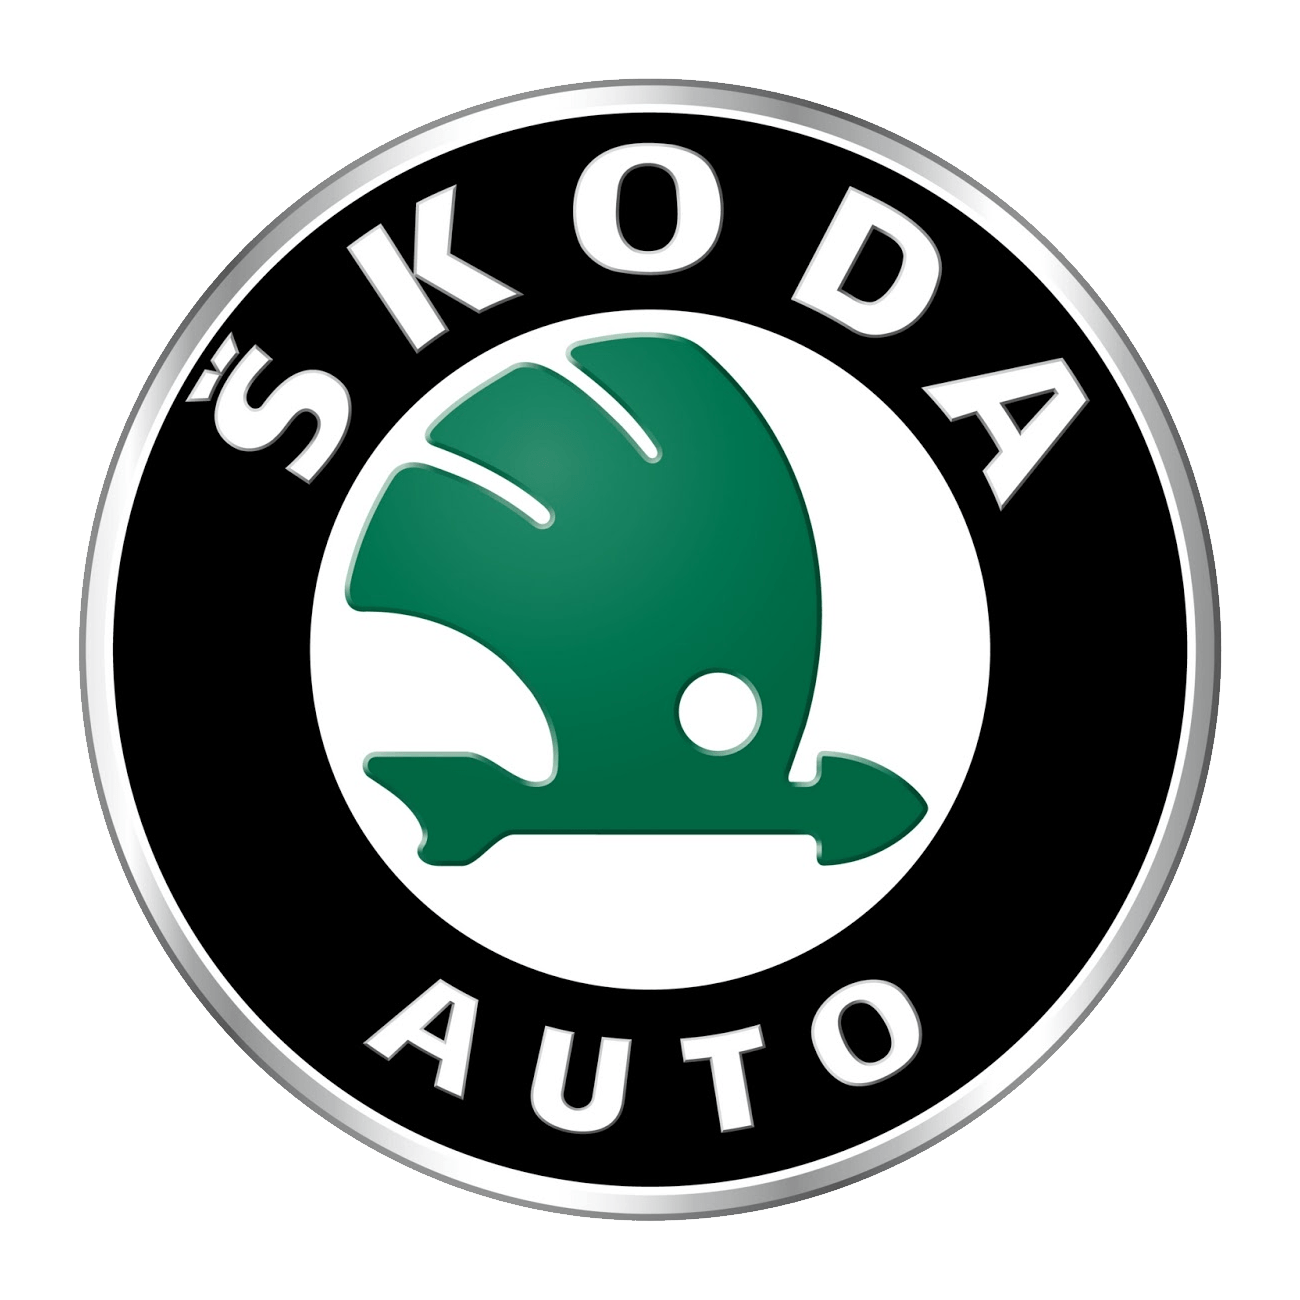 Skoda Logo PNG Image Background